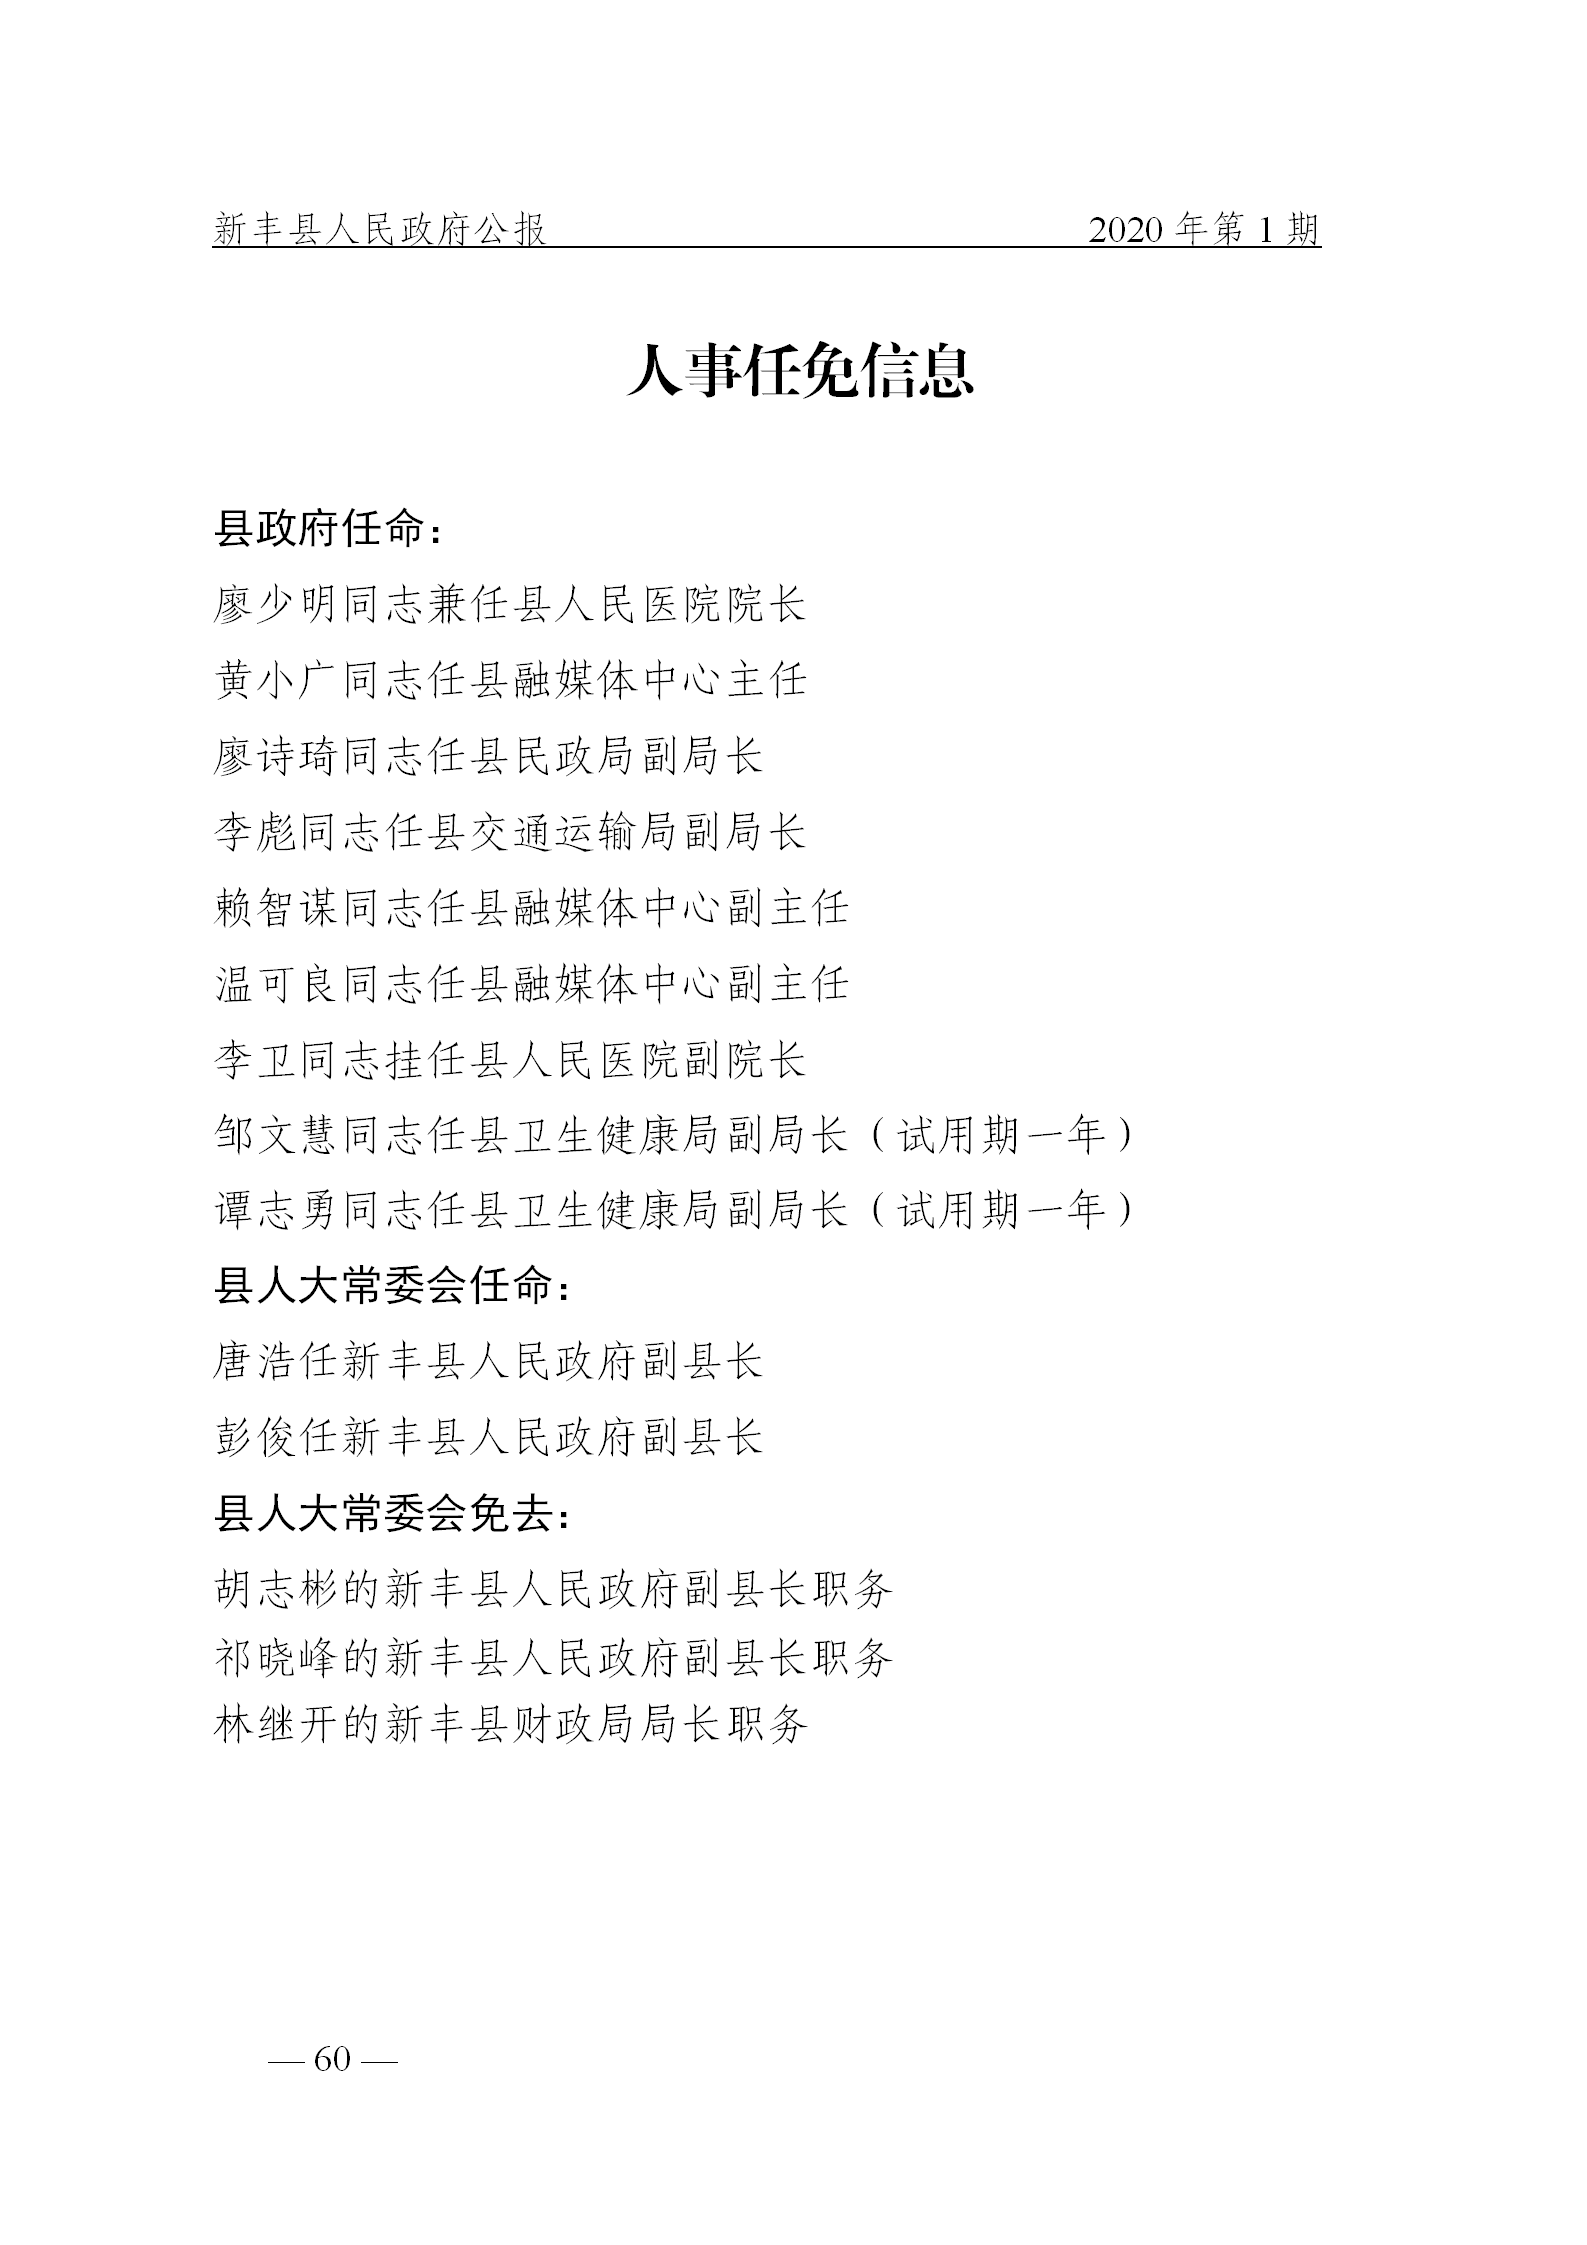 《新丰县人民政府公报》2020年第1期(1)_60.png